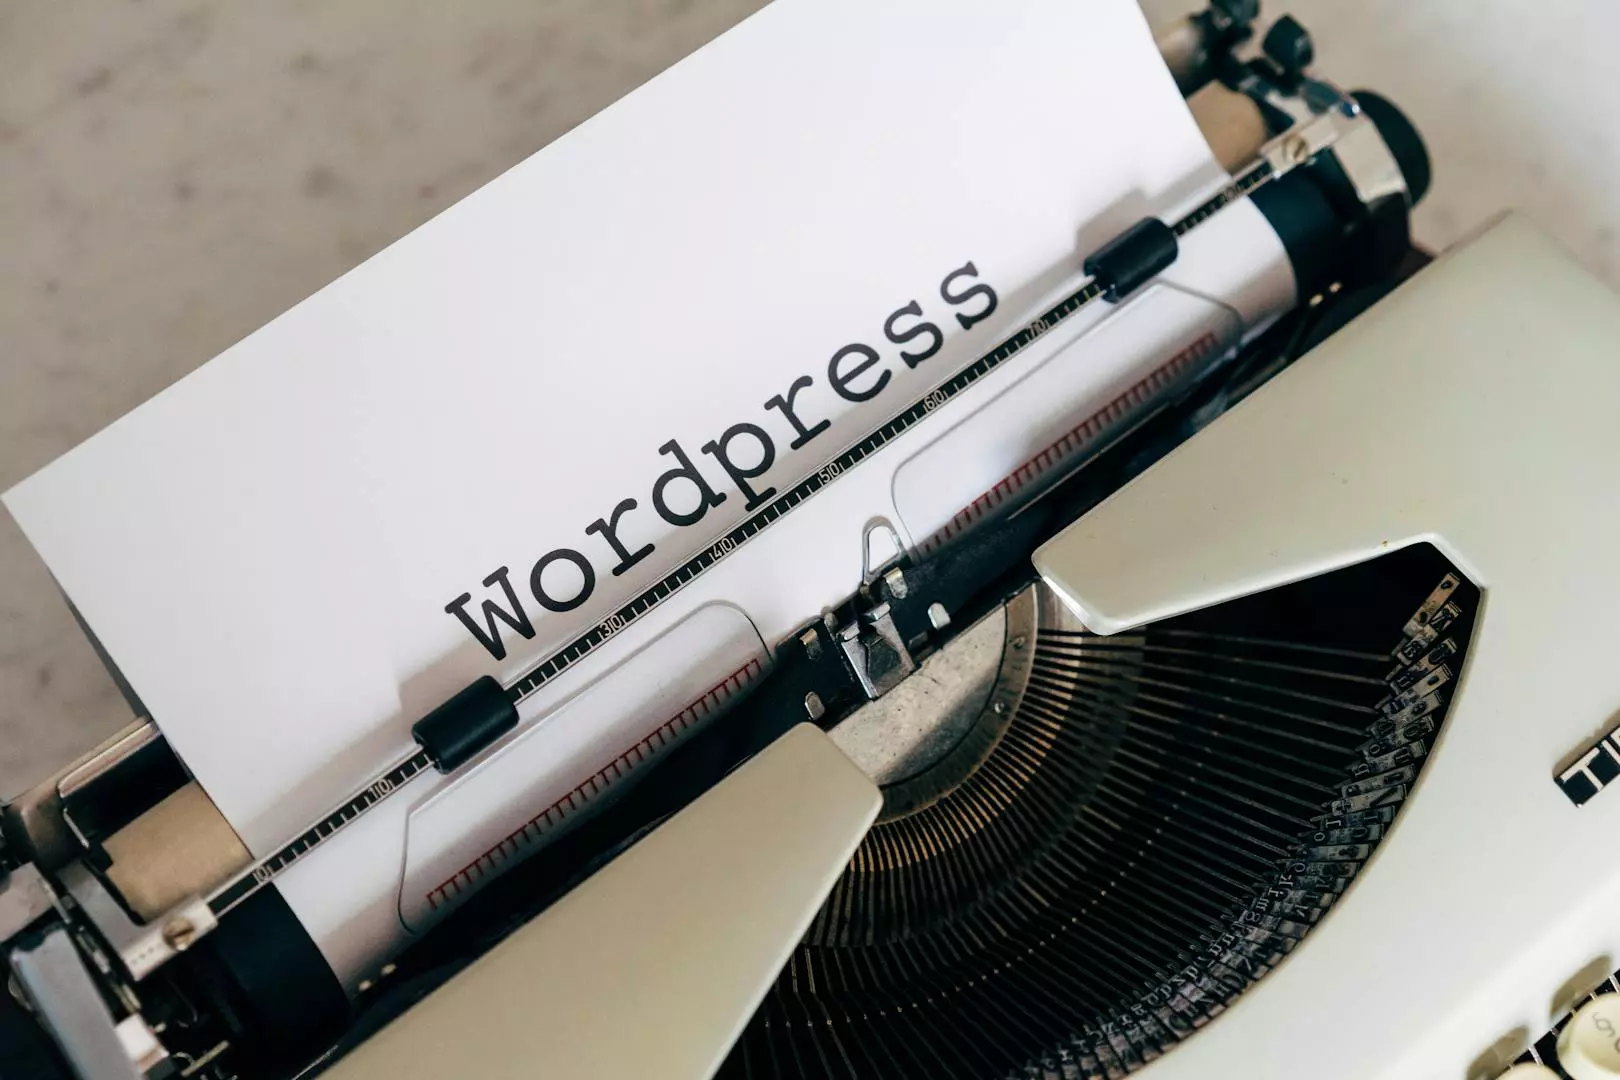 Unngå black hat SEO på din WordPress: Sikre metoder for langvarig suksess